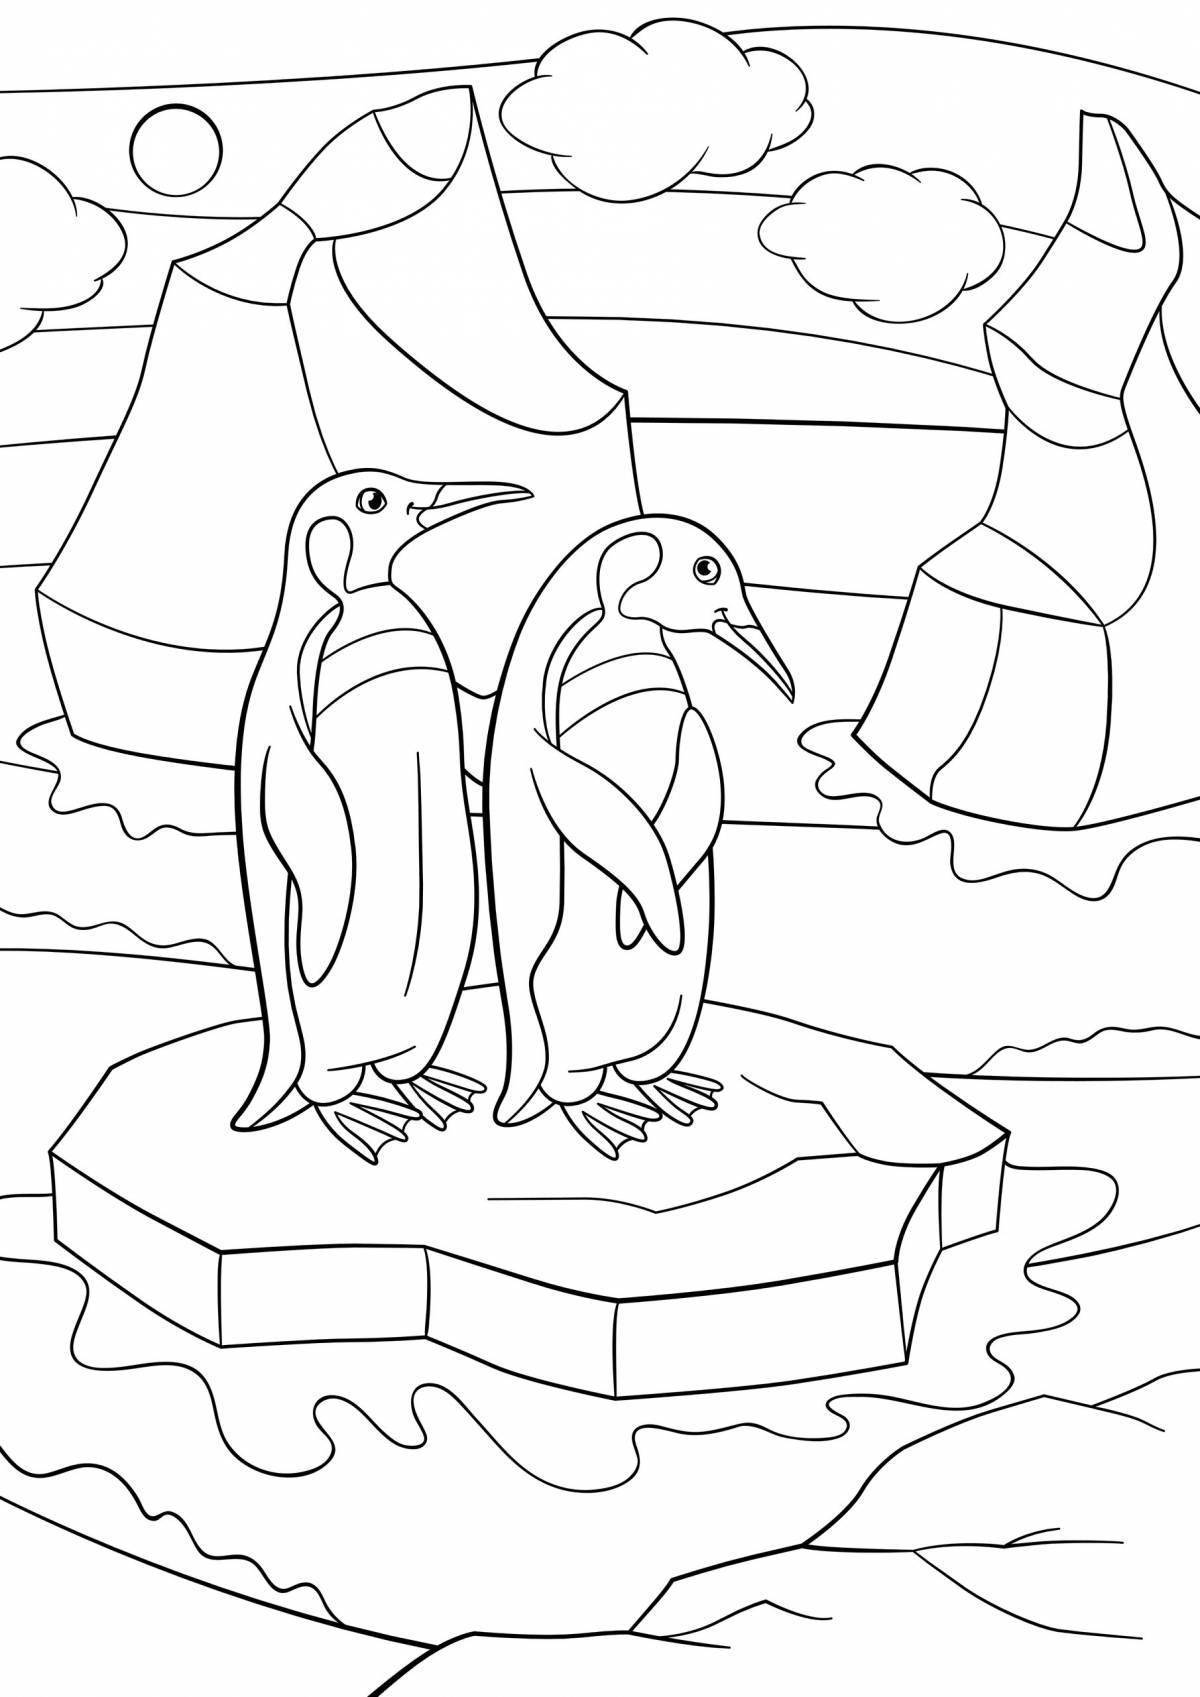 Пингвин раскраска для детей дошкольников